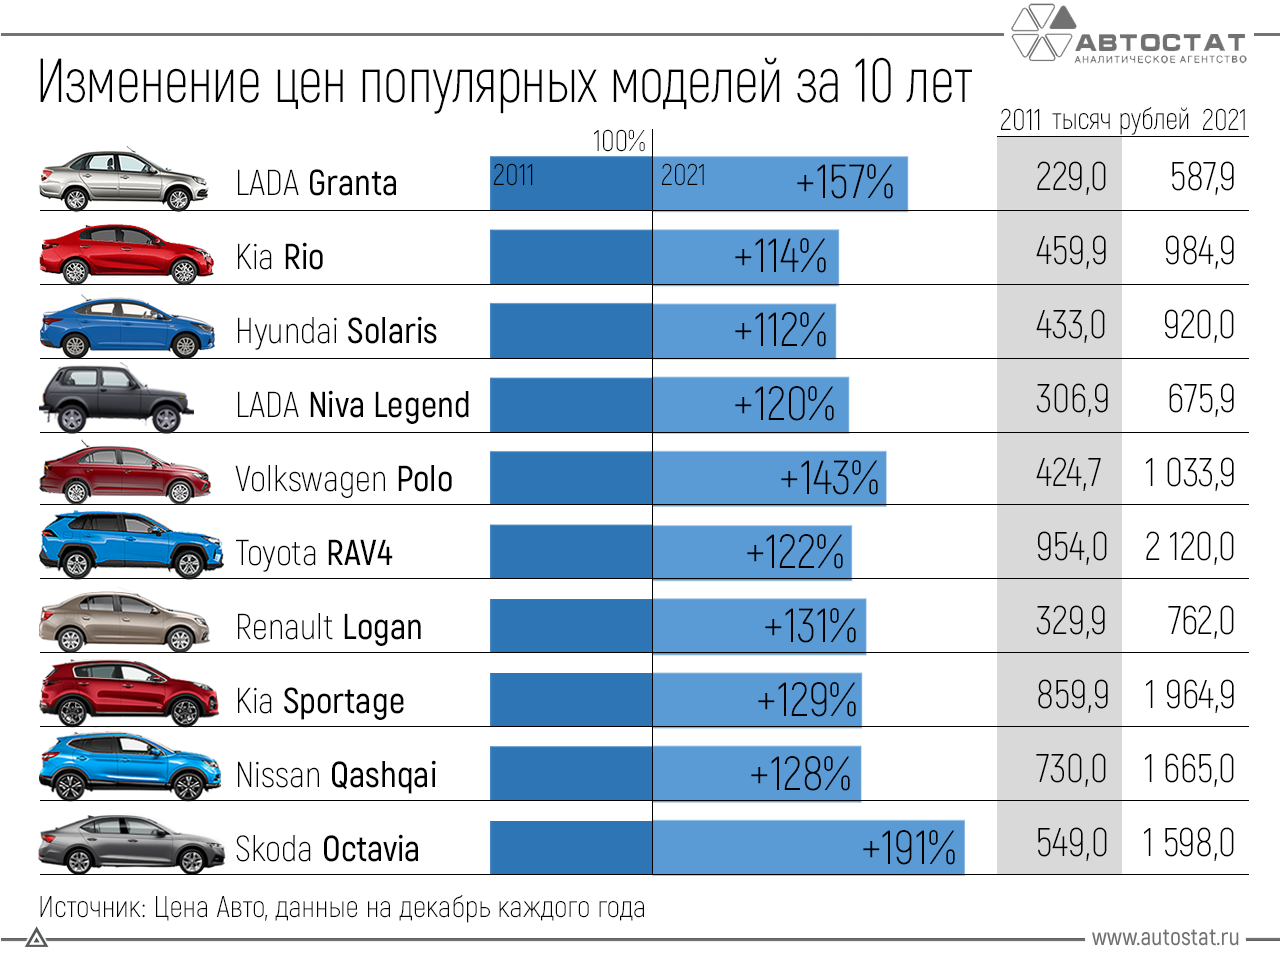 На сегодняшний день в России представлены далеко не все марки минивенов, поскольку цена на такие авто получается слишком высокой Тем не менее, спрос на